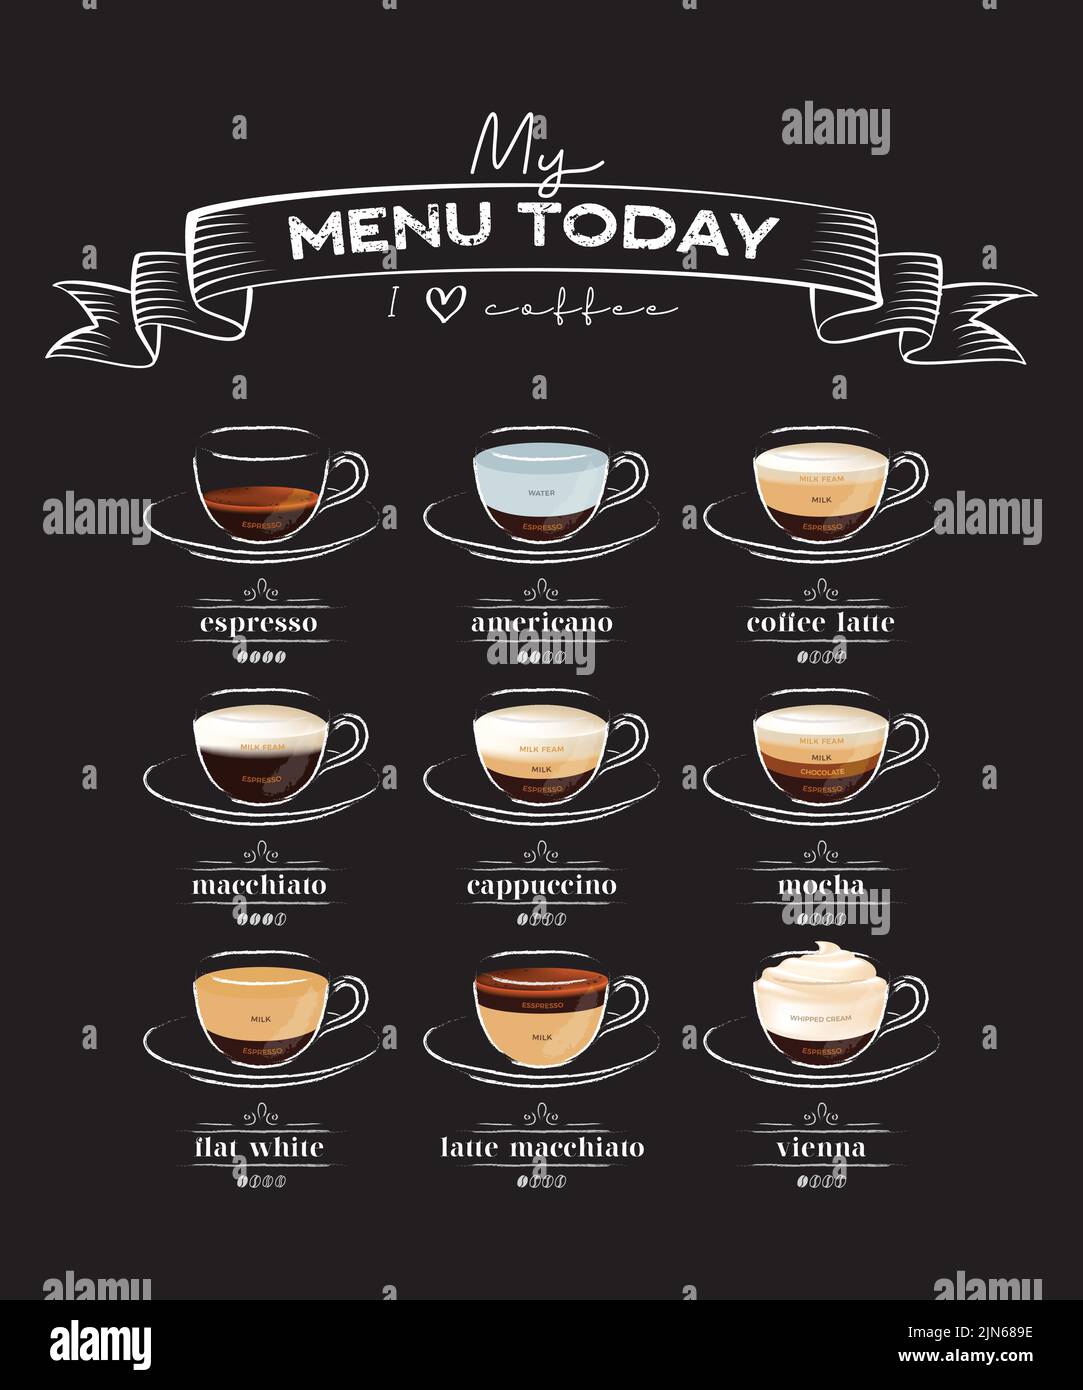 Grafik für Kaffeeliebhaber. Muster mit Kaffeearten. Liste der Kaffeetassen mit Beschreibungen. Eine Speisekarte für einen echten Kaffeeliebhaber. Stock Vektor